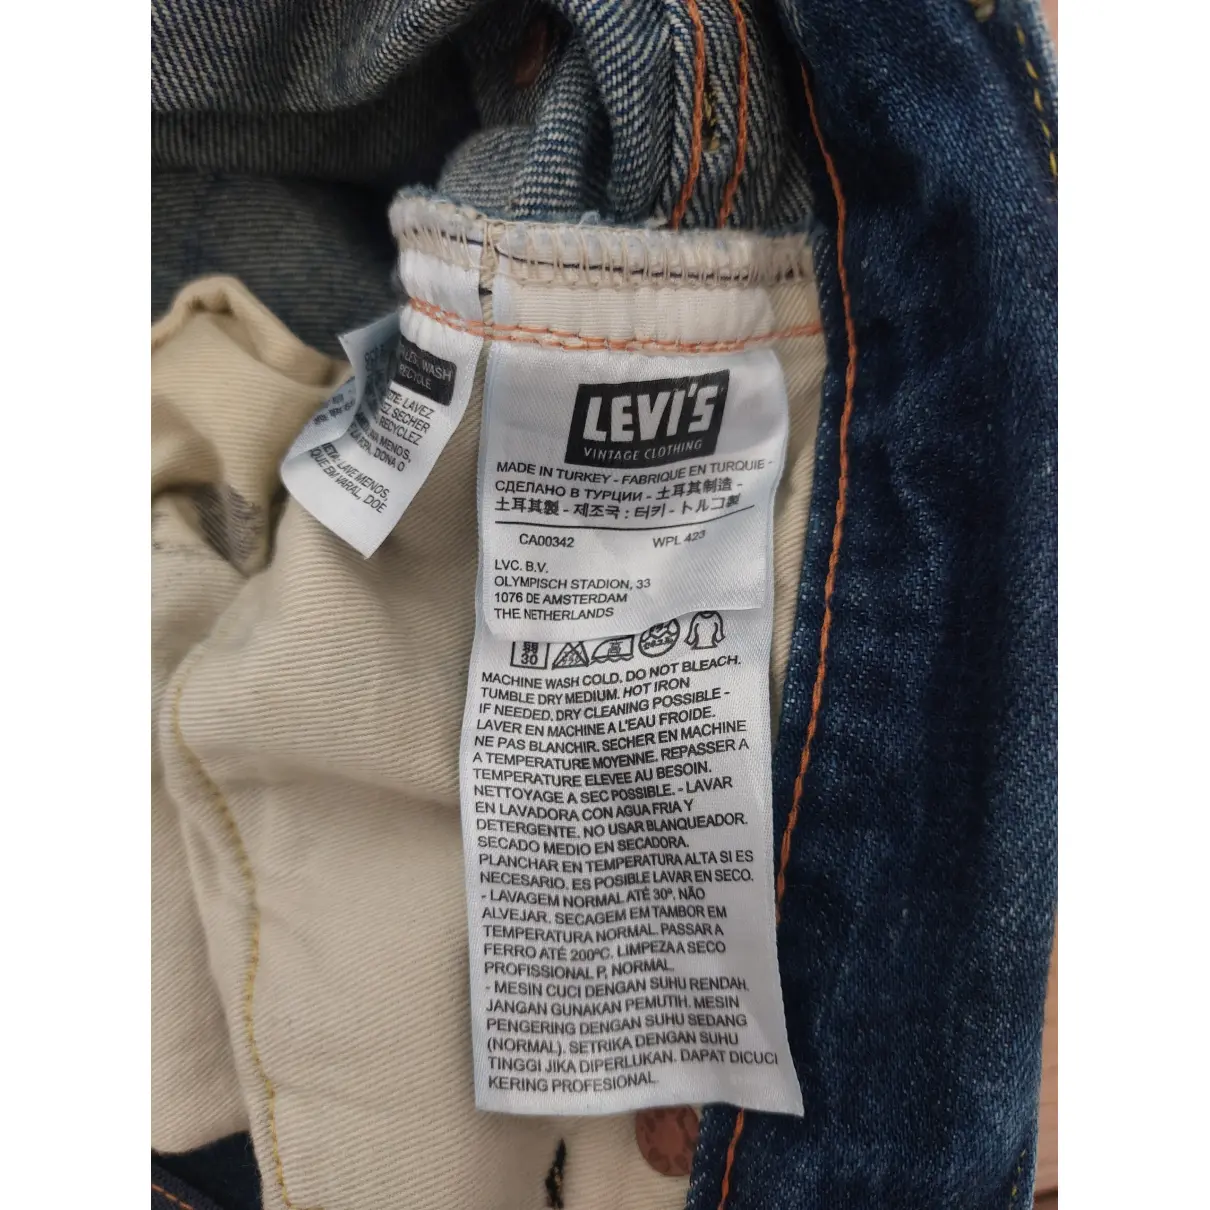 Boyfriend jeans Levi's Vintage Clothing